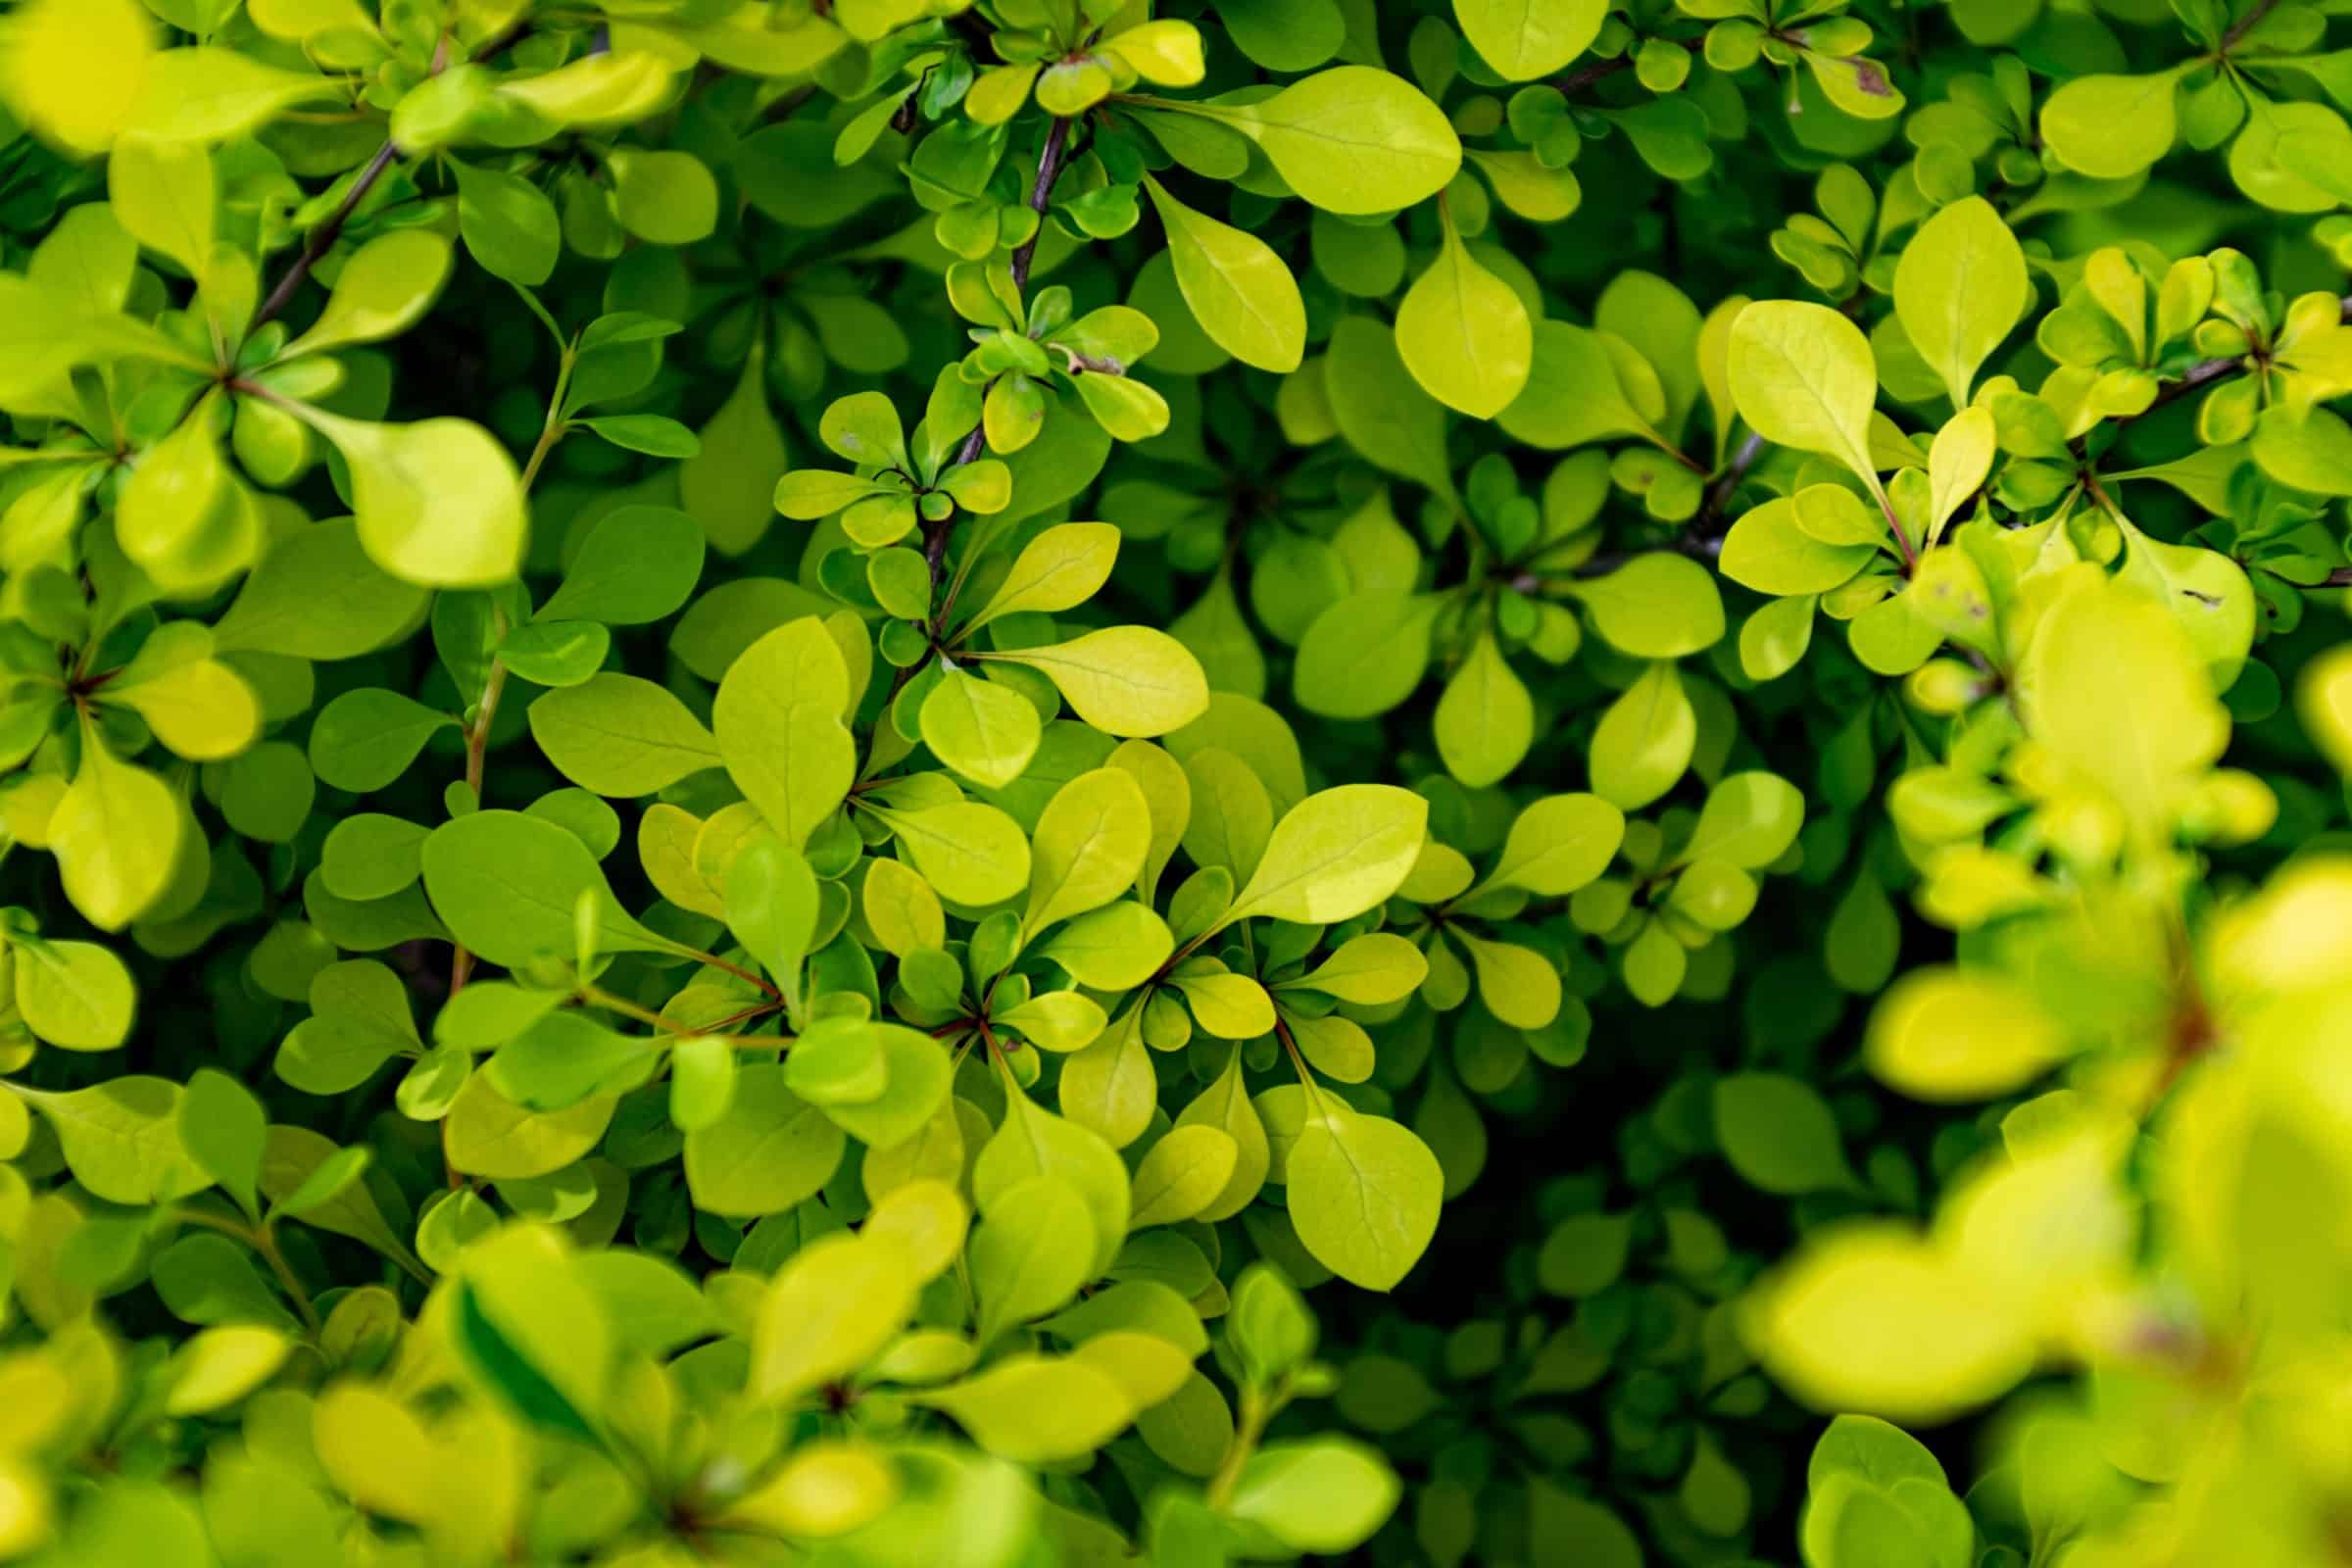 Green leaves in macro lens